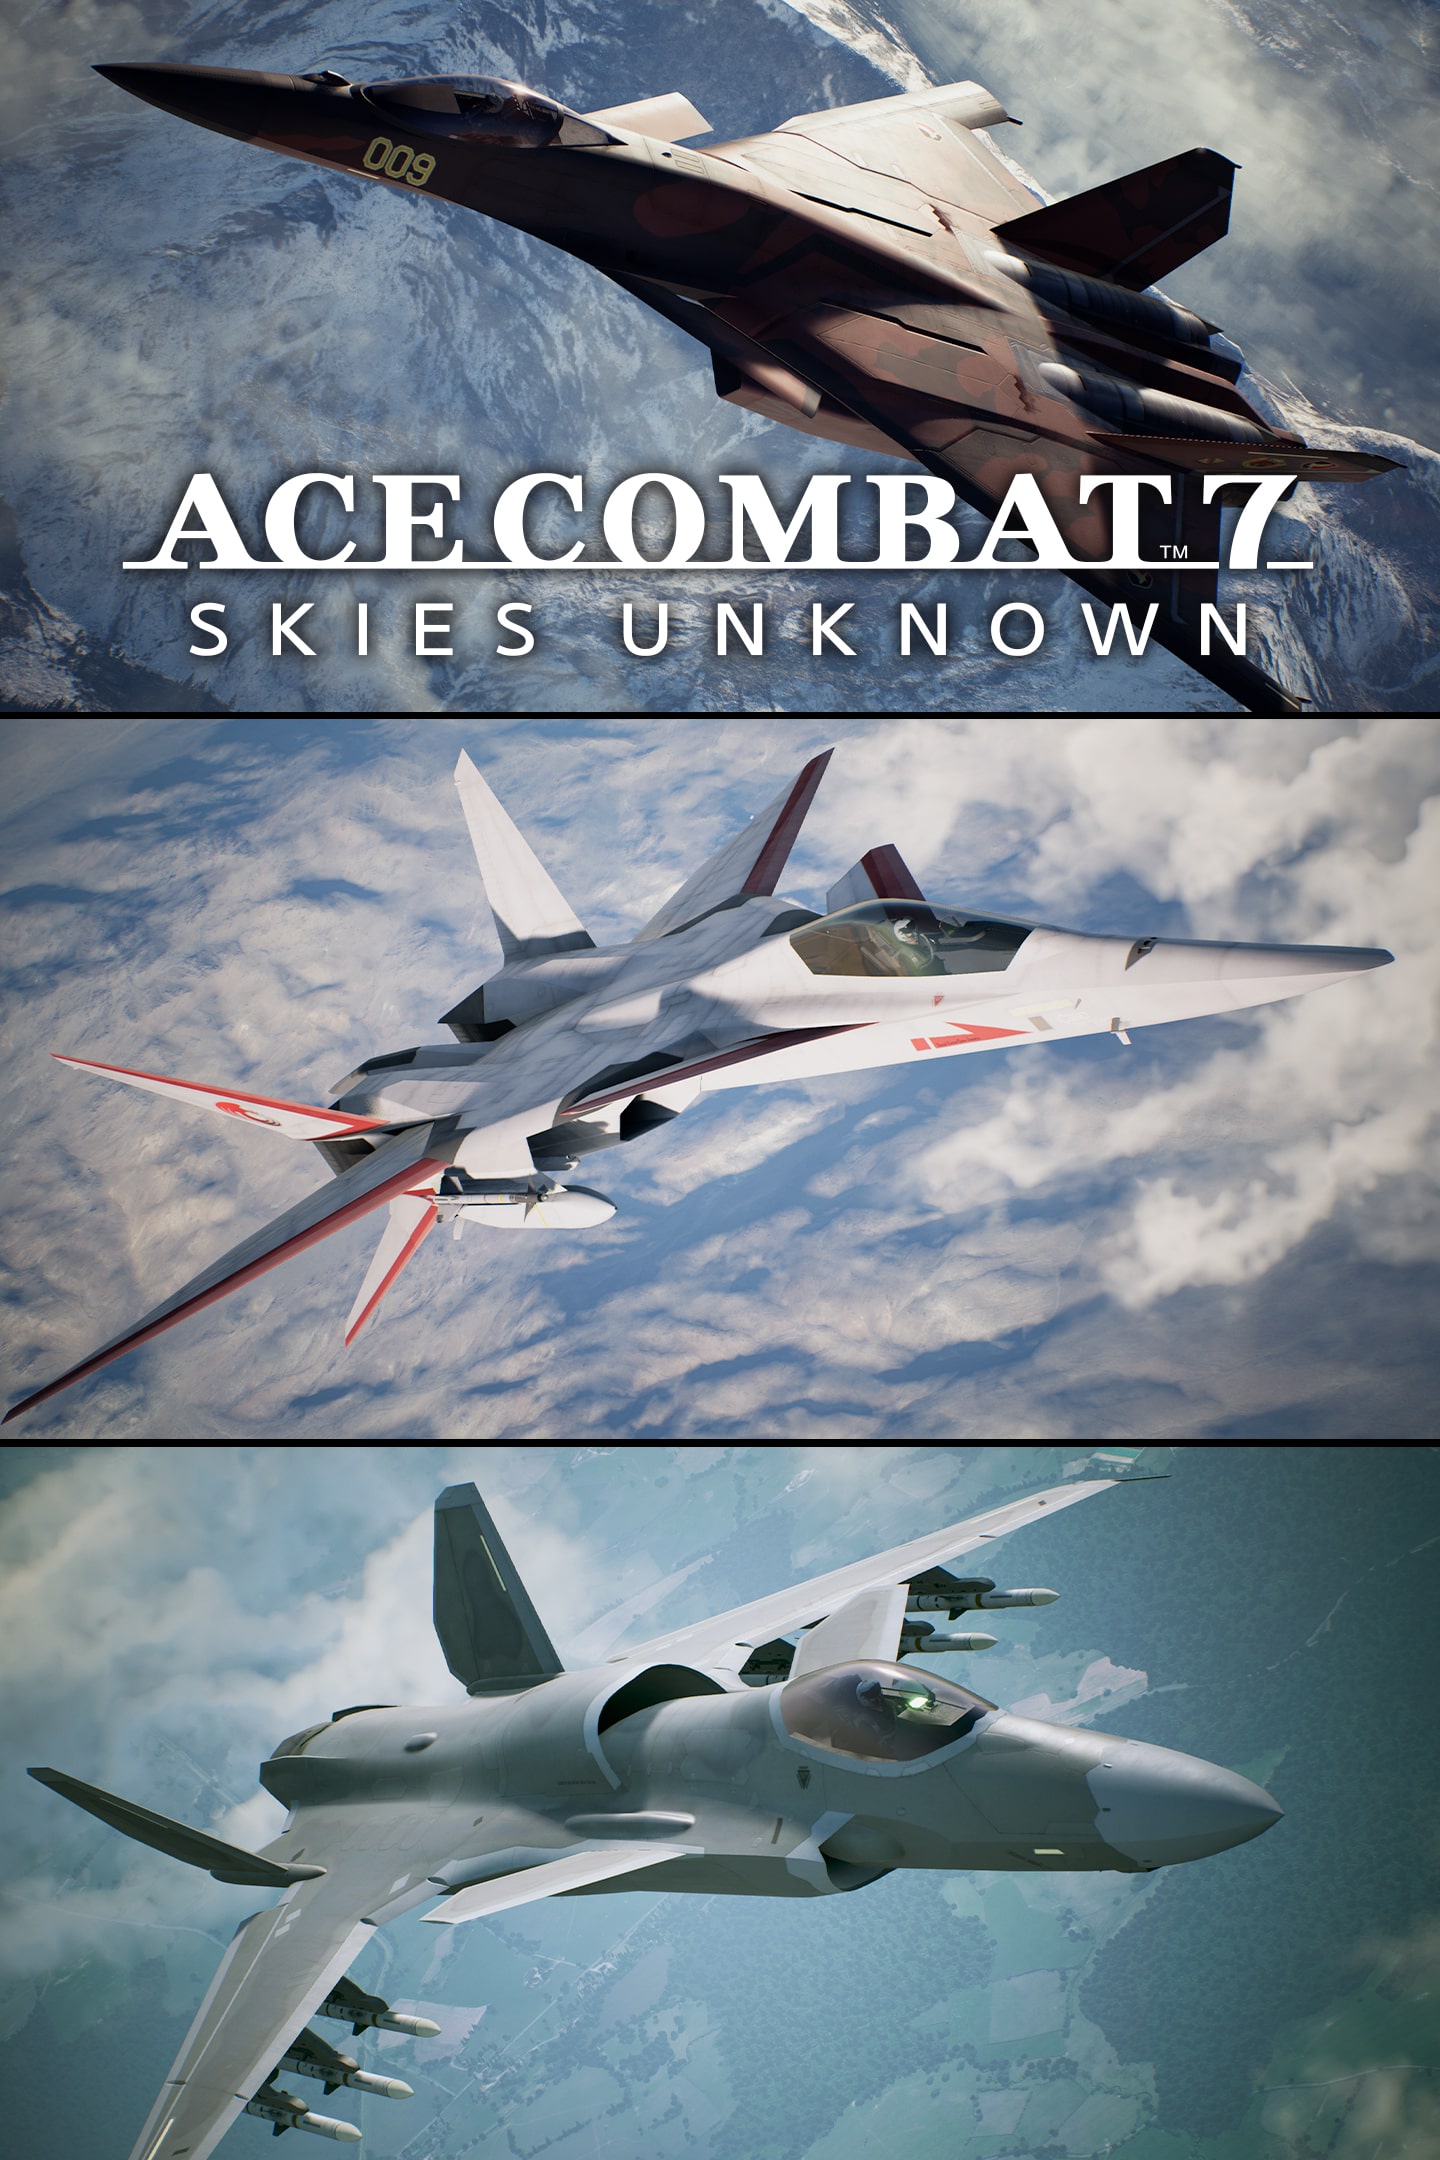 Jf Buy Ace Combat 7 Ps4 Cheap Online Grallokma Com